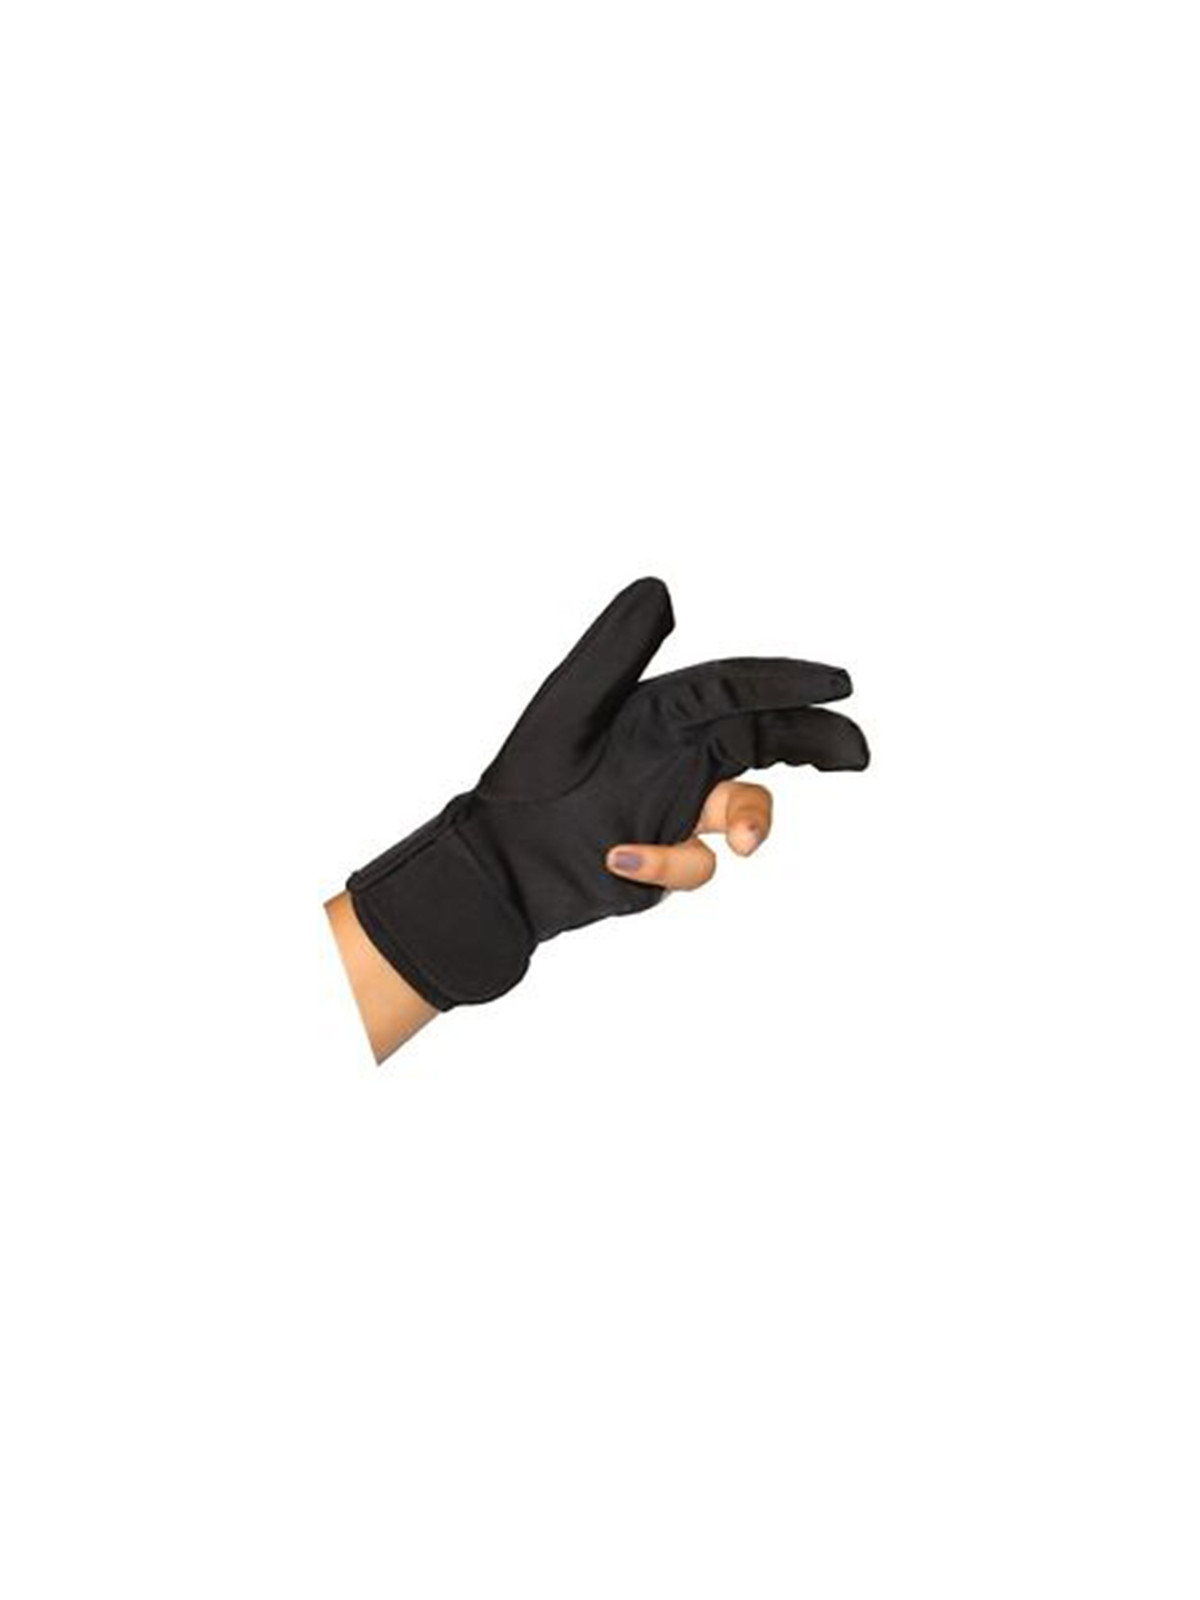 Bravehead Heat Resistant Glove